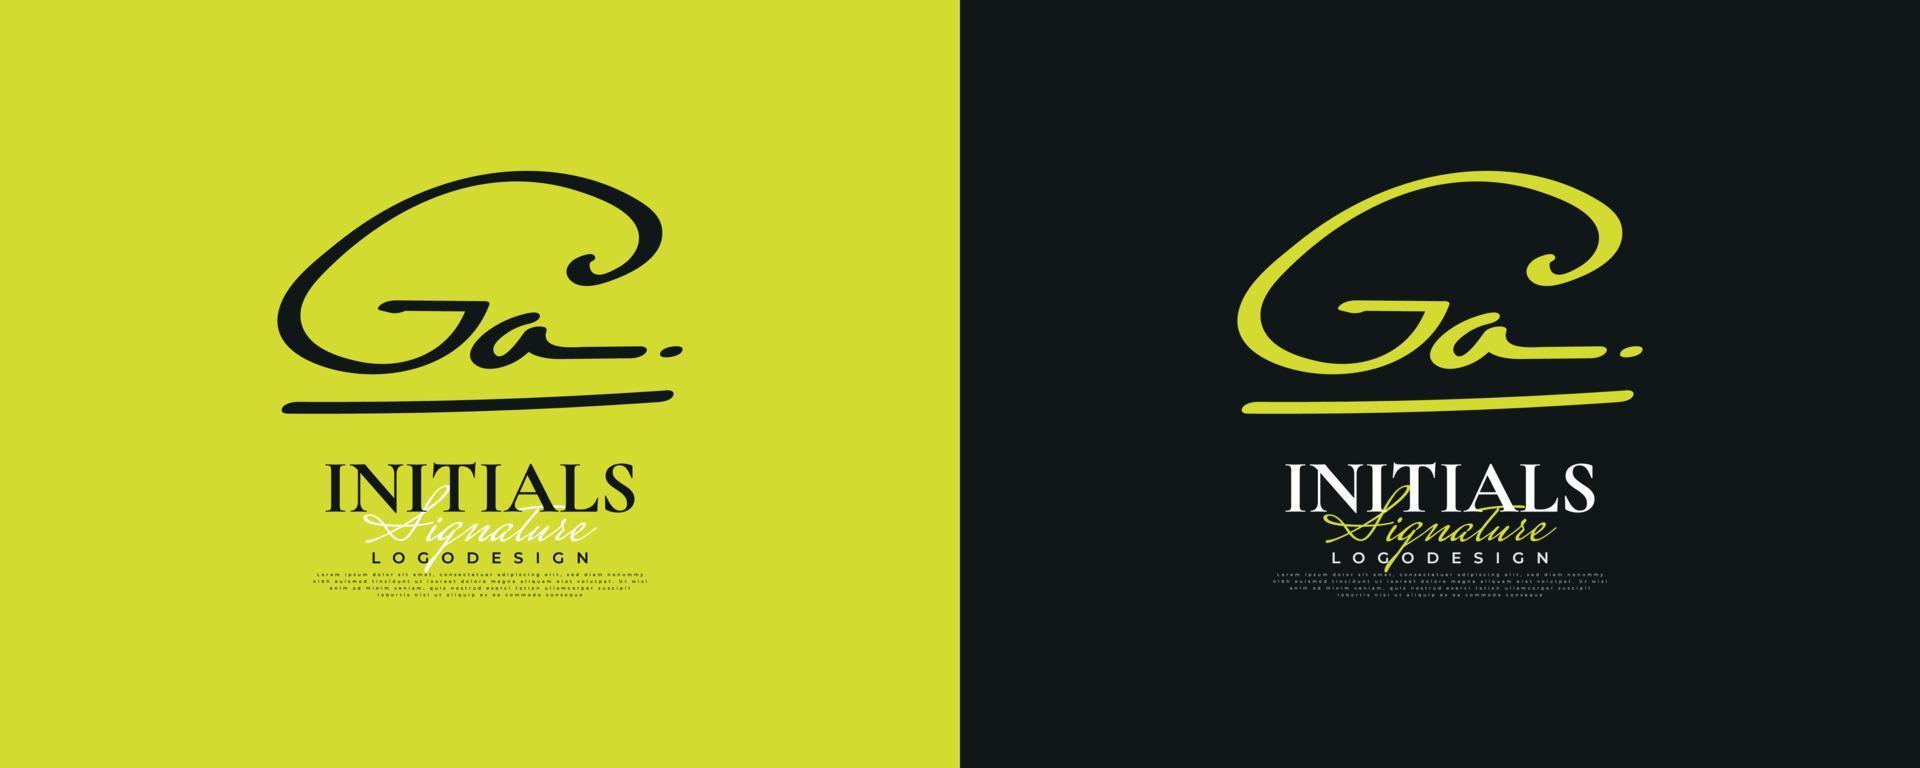 Initial g und ein Logo-Design im eleganten und minimalistischen Handschriftstil. ga-signaturlogo oder symbol für hochzeit, mode, schmuck, boutique und geschäftsidentität vektor